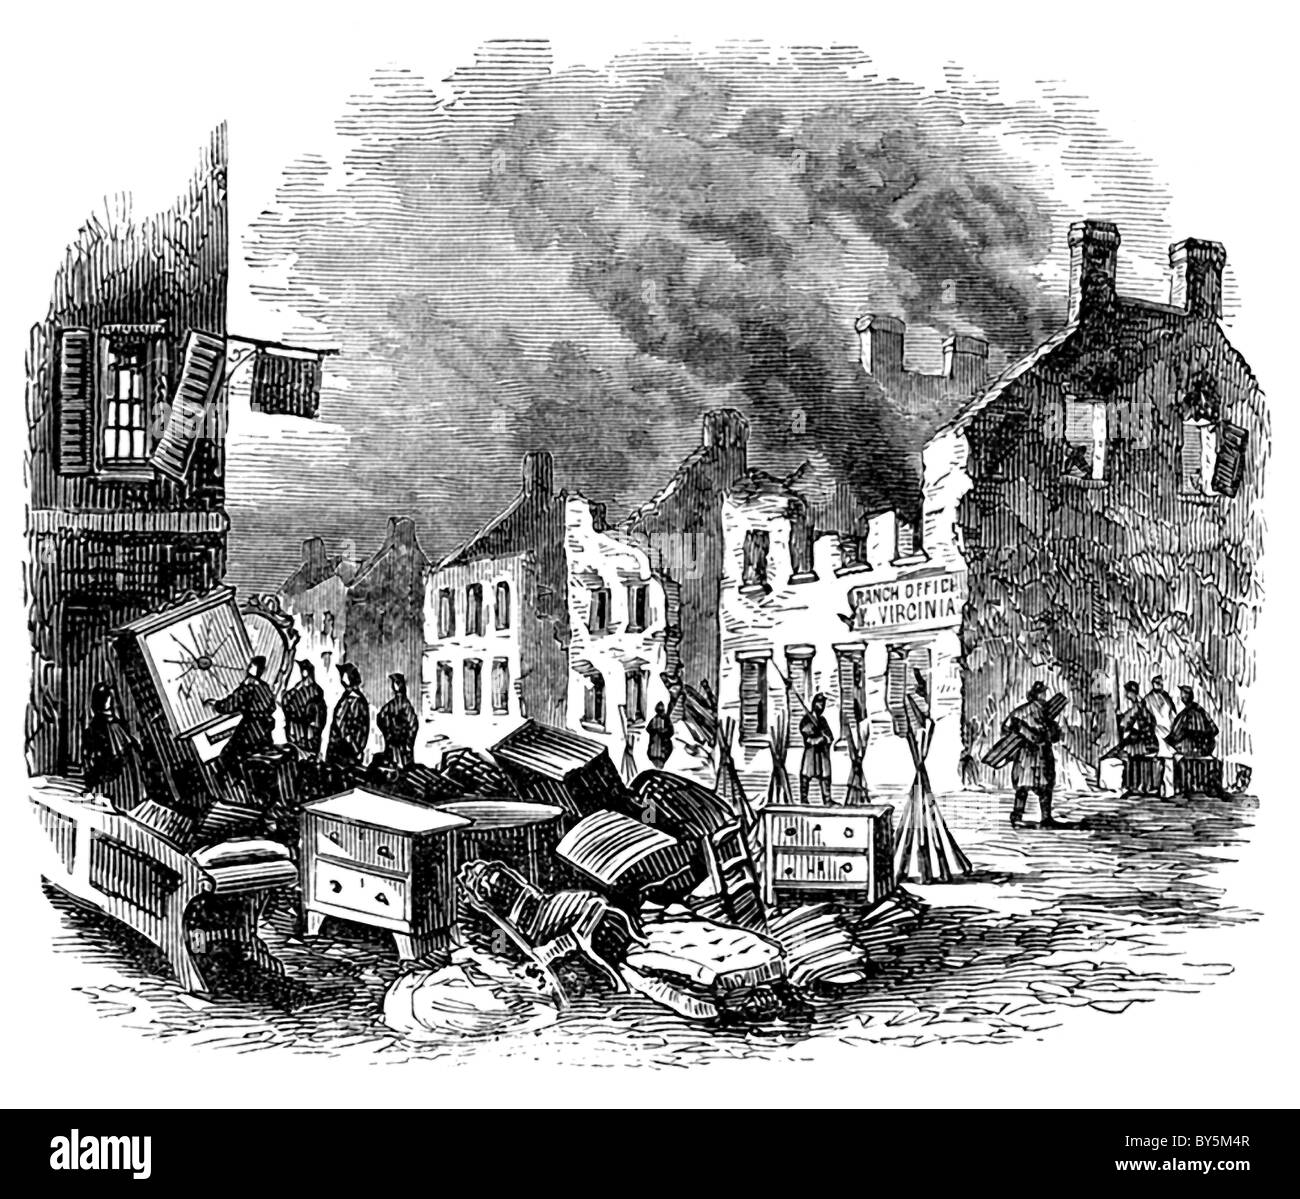 Le 11 décembre 1862, Fredericksburg, Virginia, a été lourdement bombardée et plusieurs bâtiments incendiés. Banque D'Images